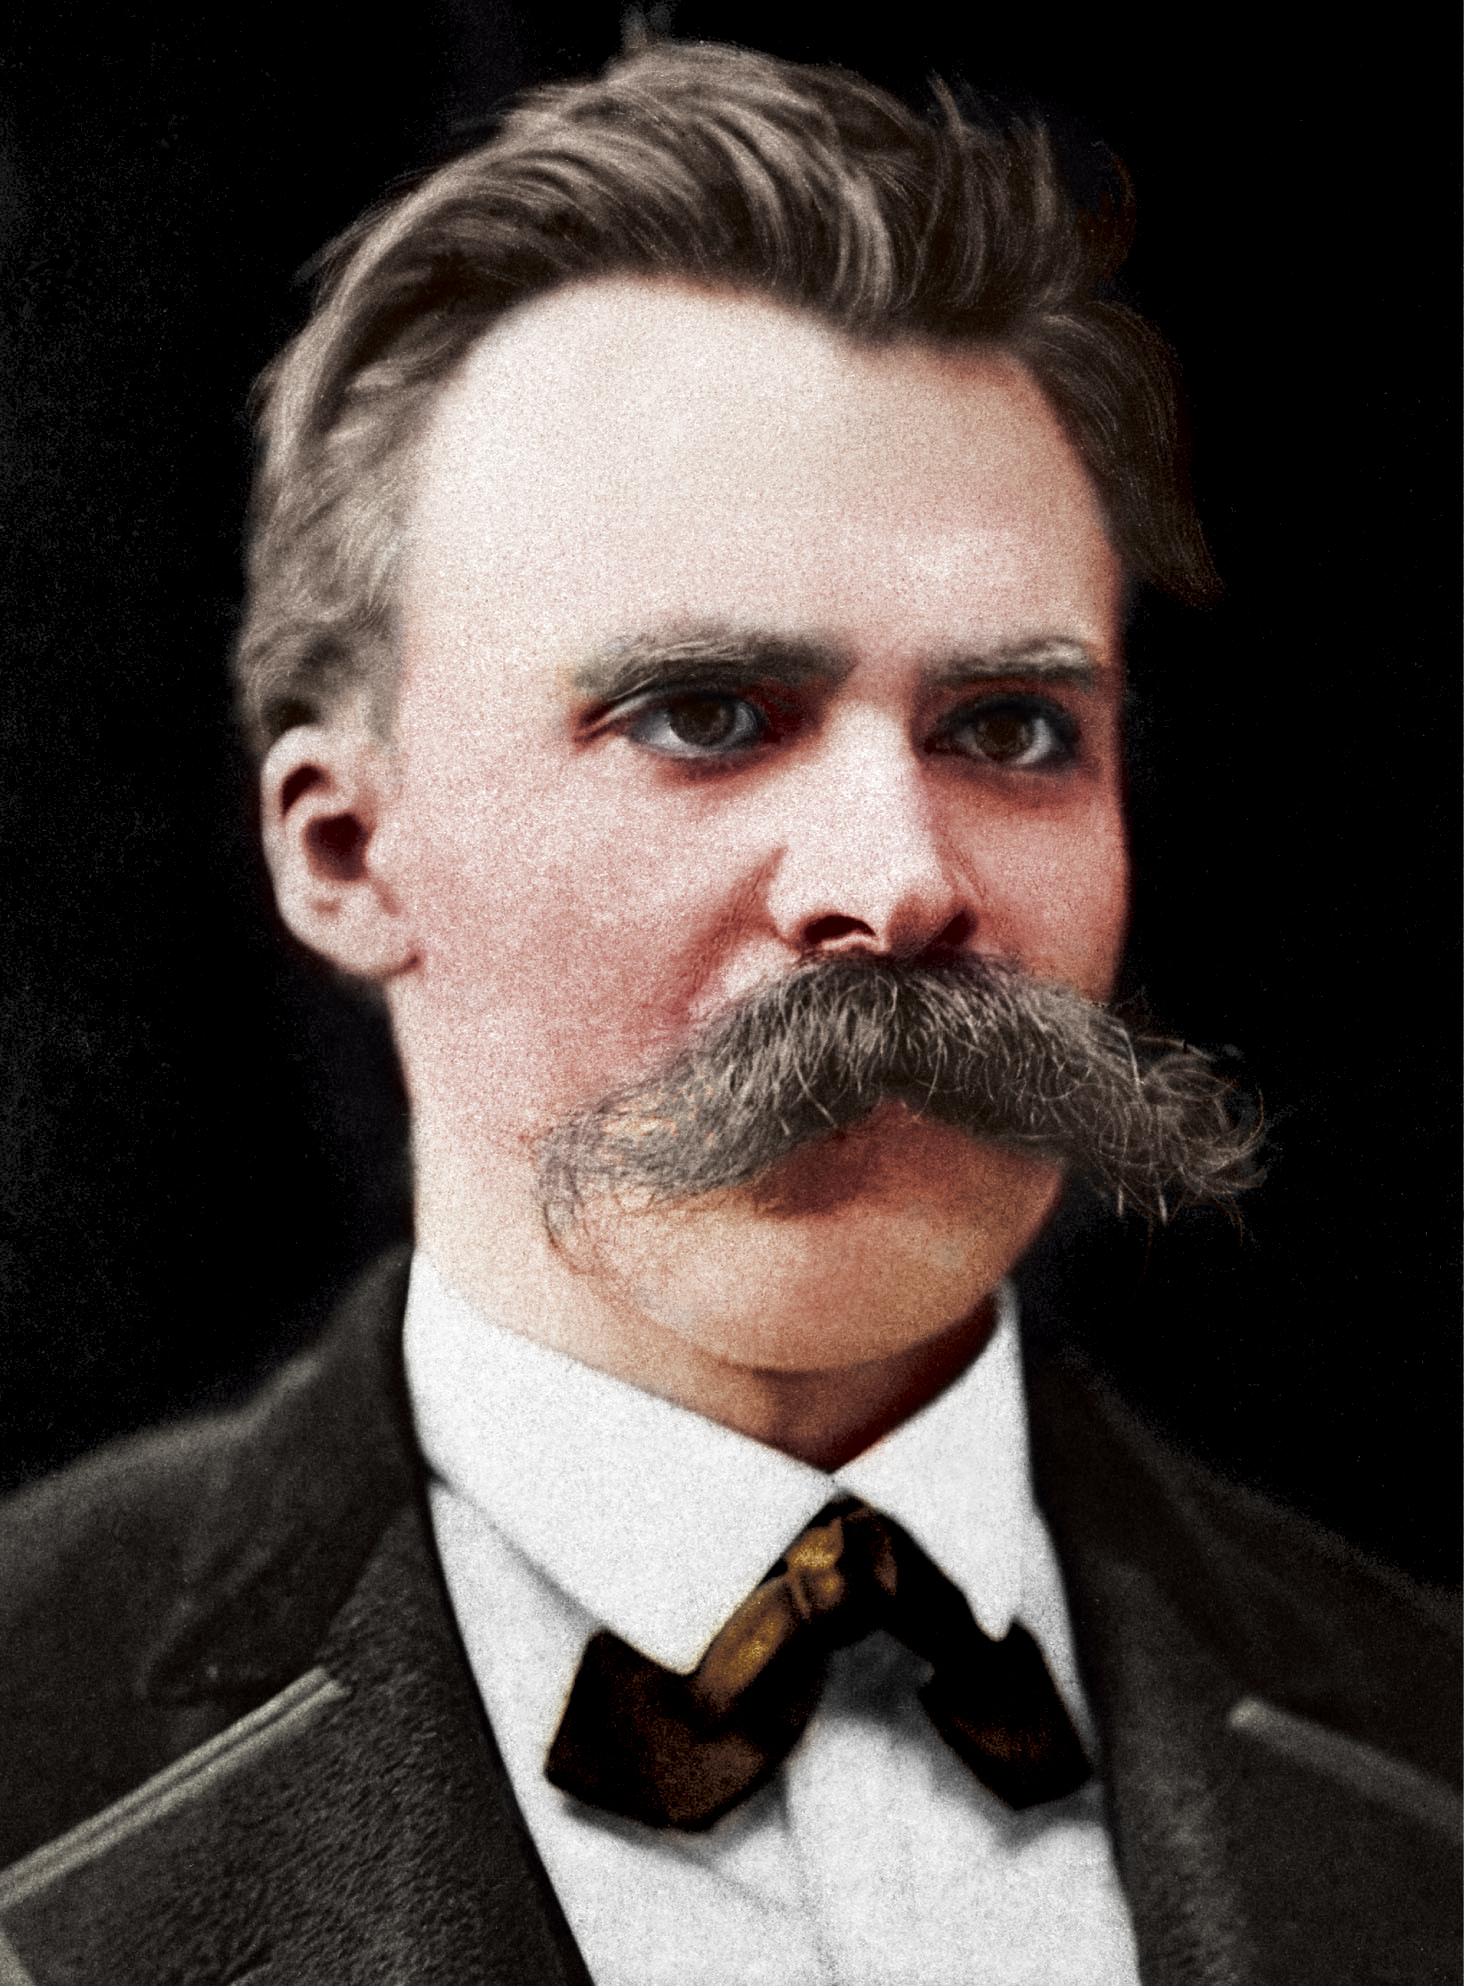 Колоризация фотографии Фридриха Ницше (15 октября 1844, Рёккен, Германский союз — 25 августа 1900, Веймар, Германская империя), ок.1875 года